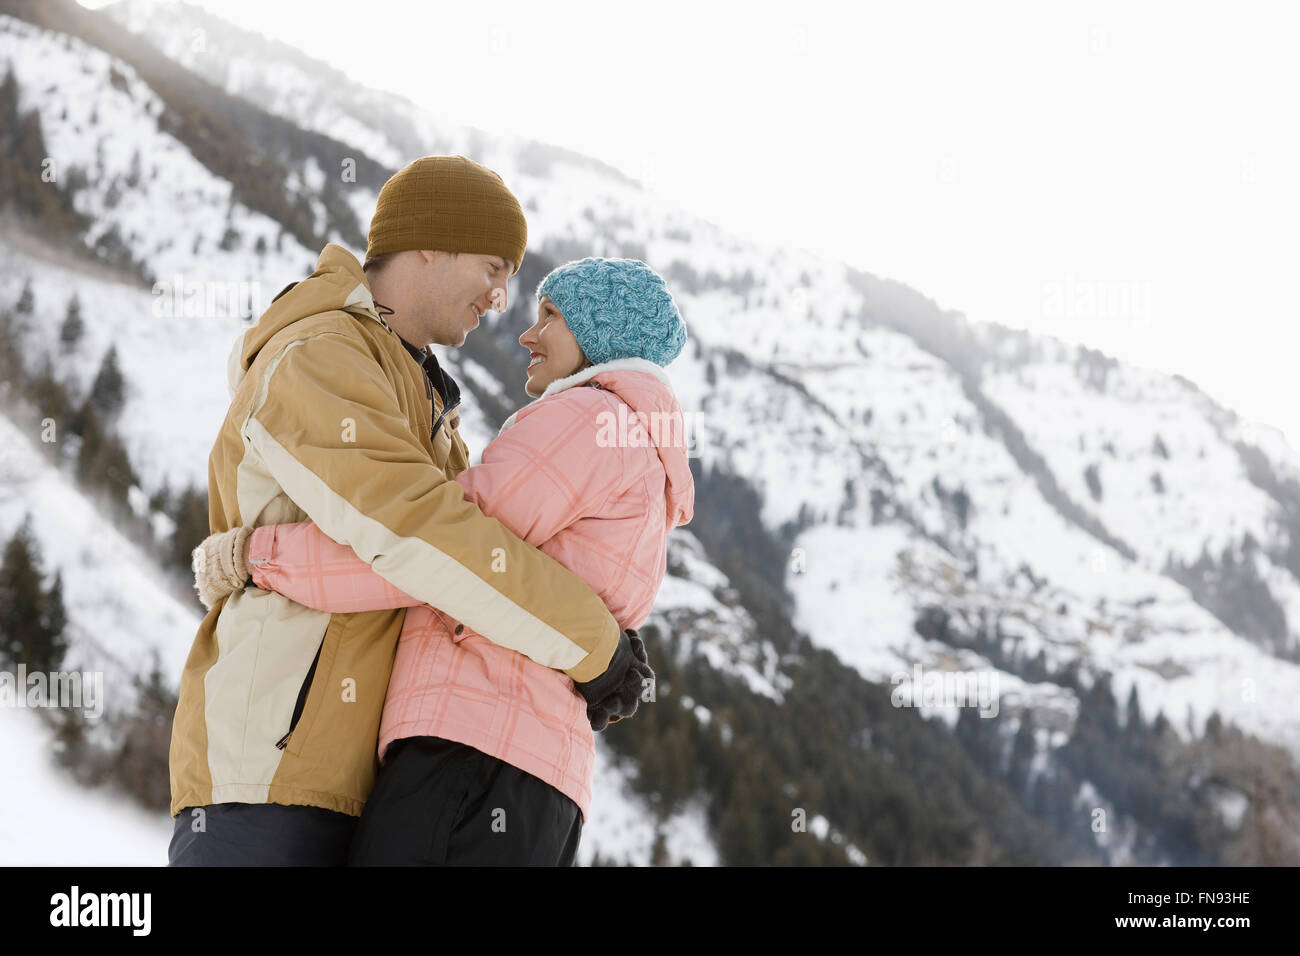 Un couple, un homme et une femme dans les montagnes enneigées. Banque D'Images